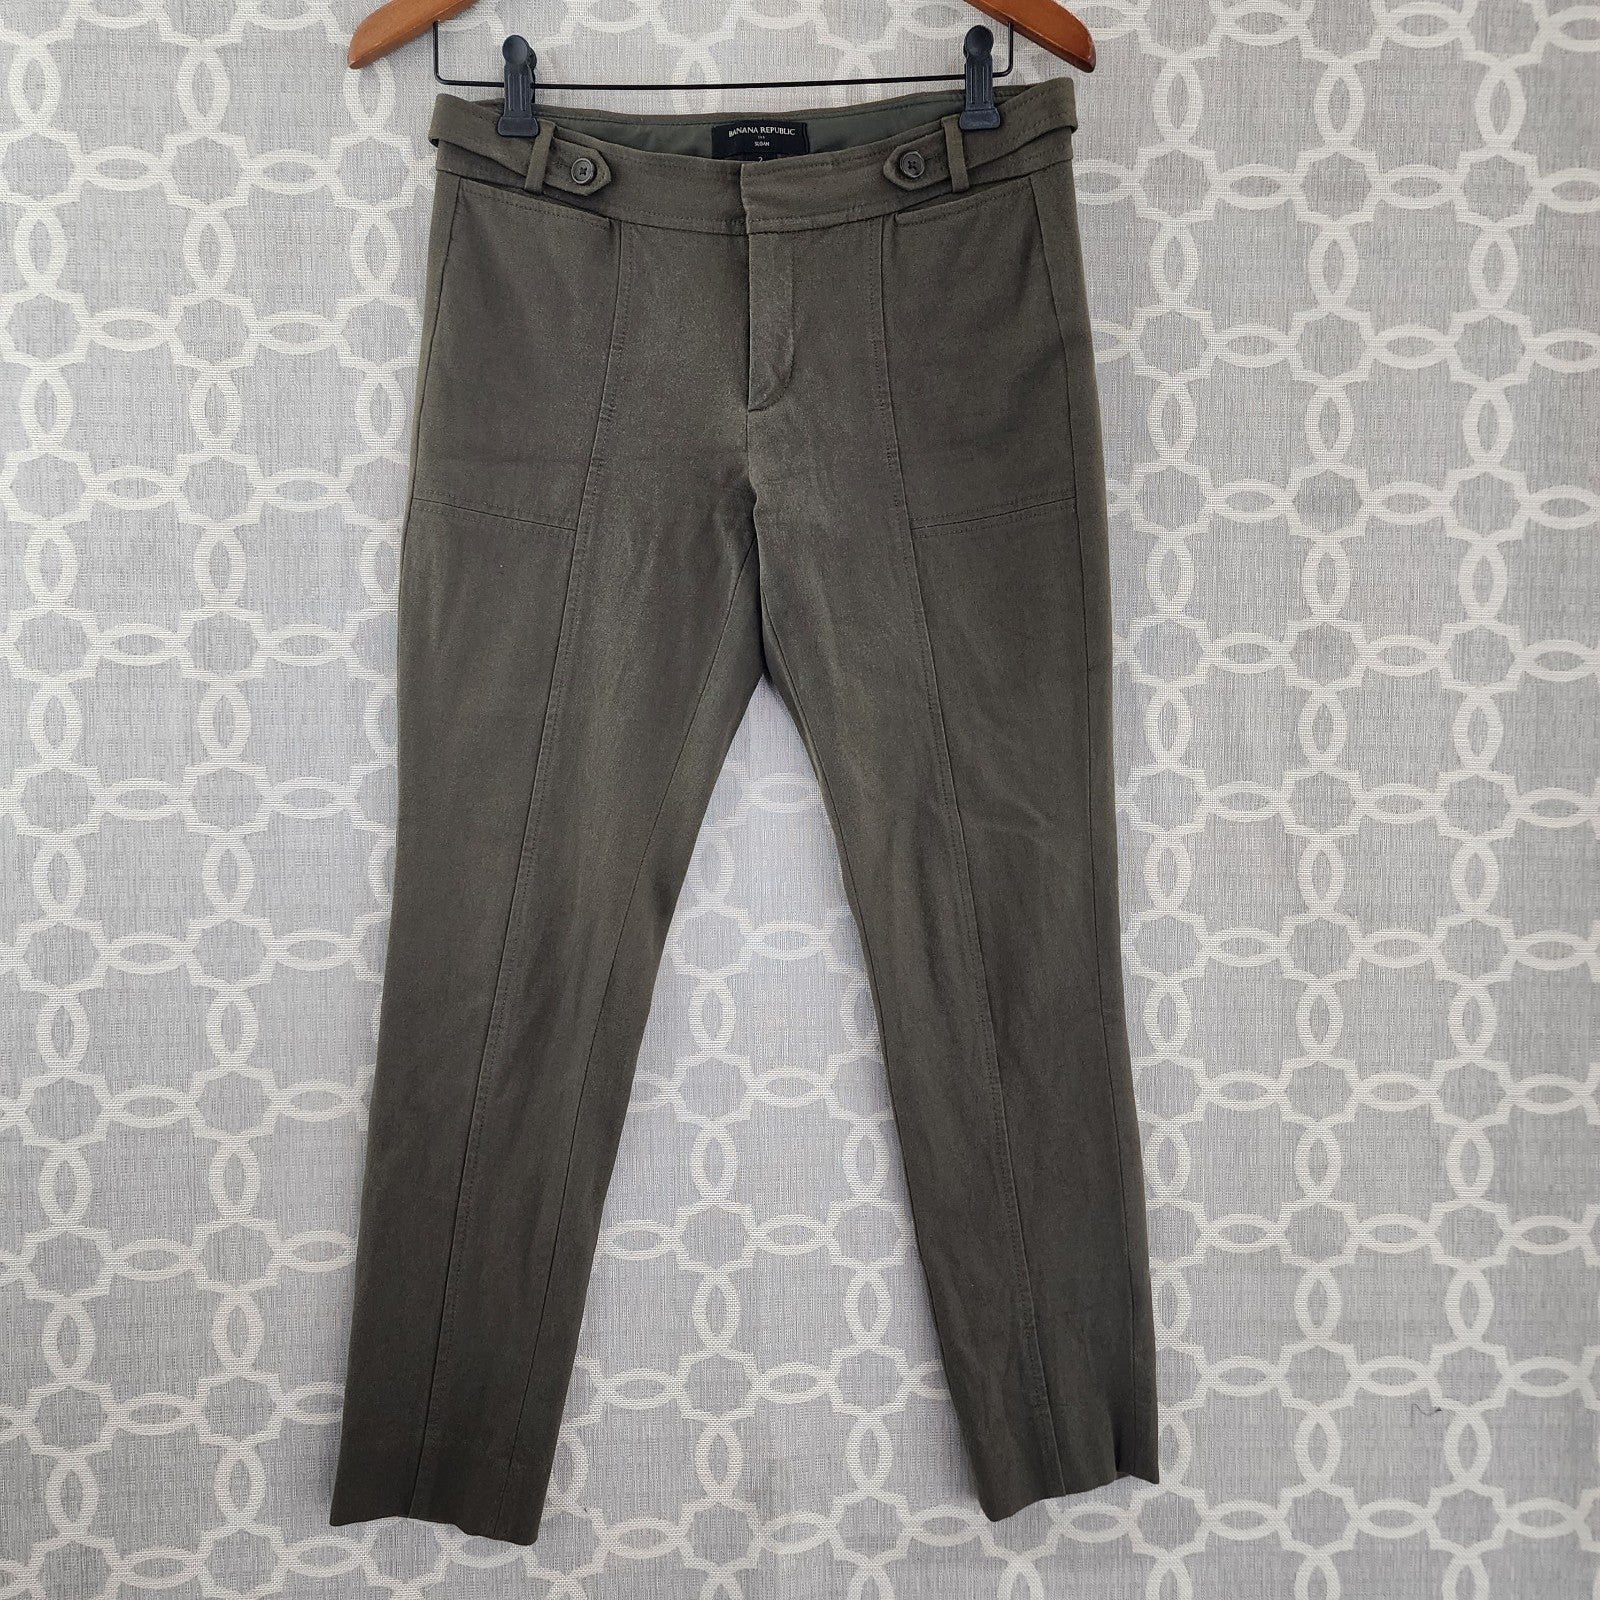 Personality Banana Republic Sloan Army Green Slim Leg Pants Women´s 2 NciuHqOXP Fashion